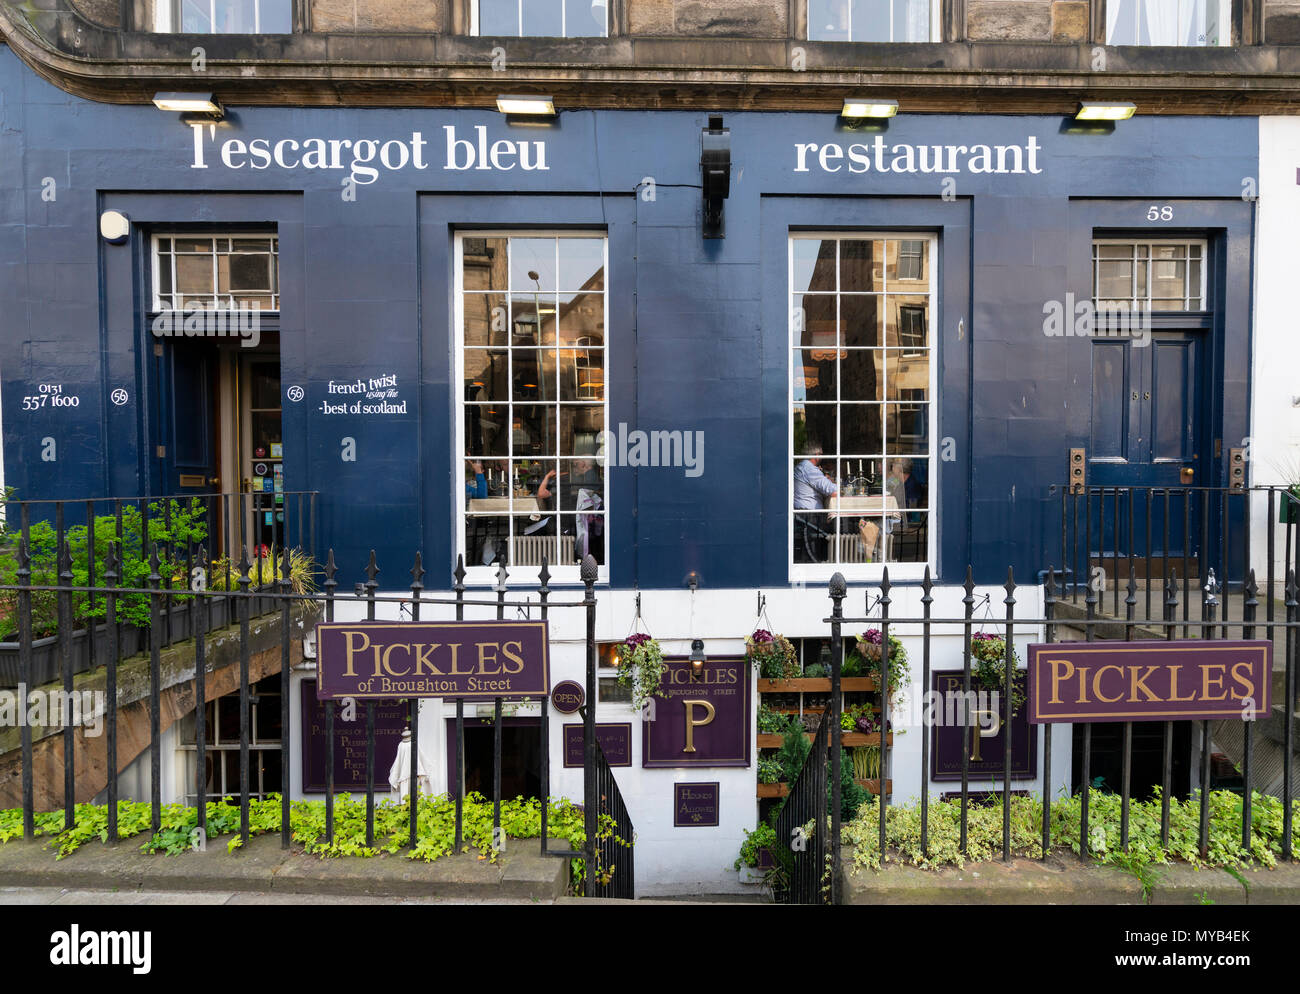 Anzeigen von L'Escargot Bleu Restaurant und Pickles der Broughton Street Wine Bar auf der Broughton Street in der New Town von Edinburgh, Schottland, Großbritannien Stockfoto